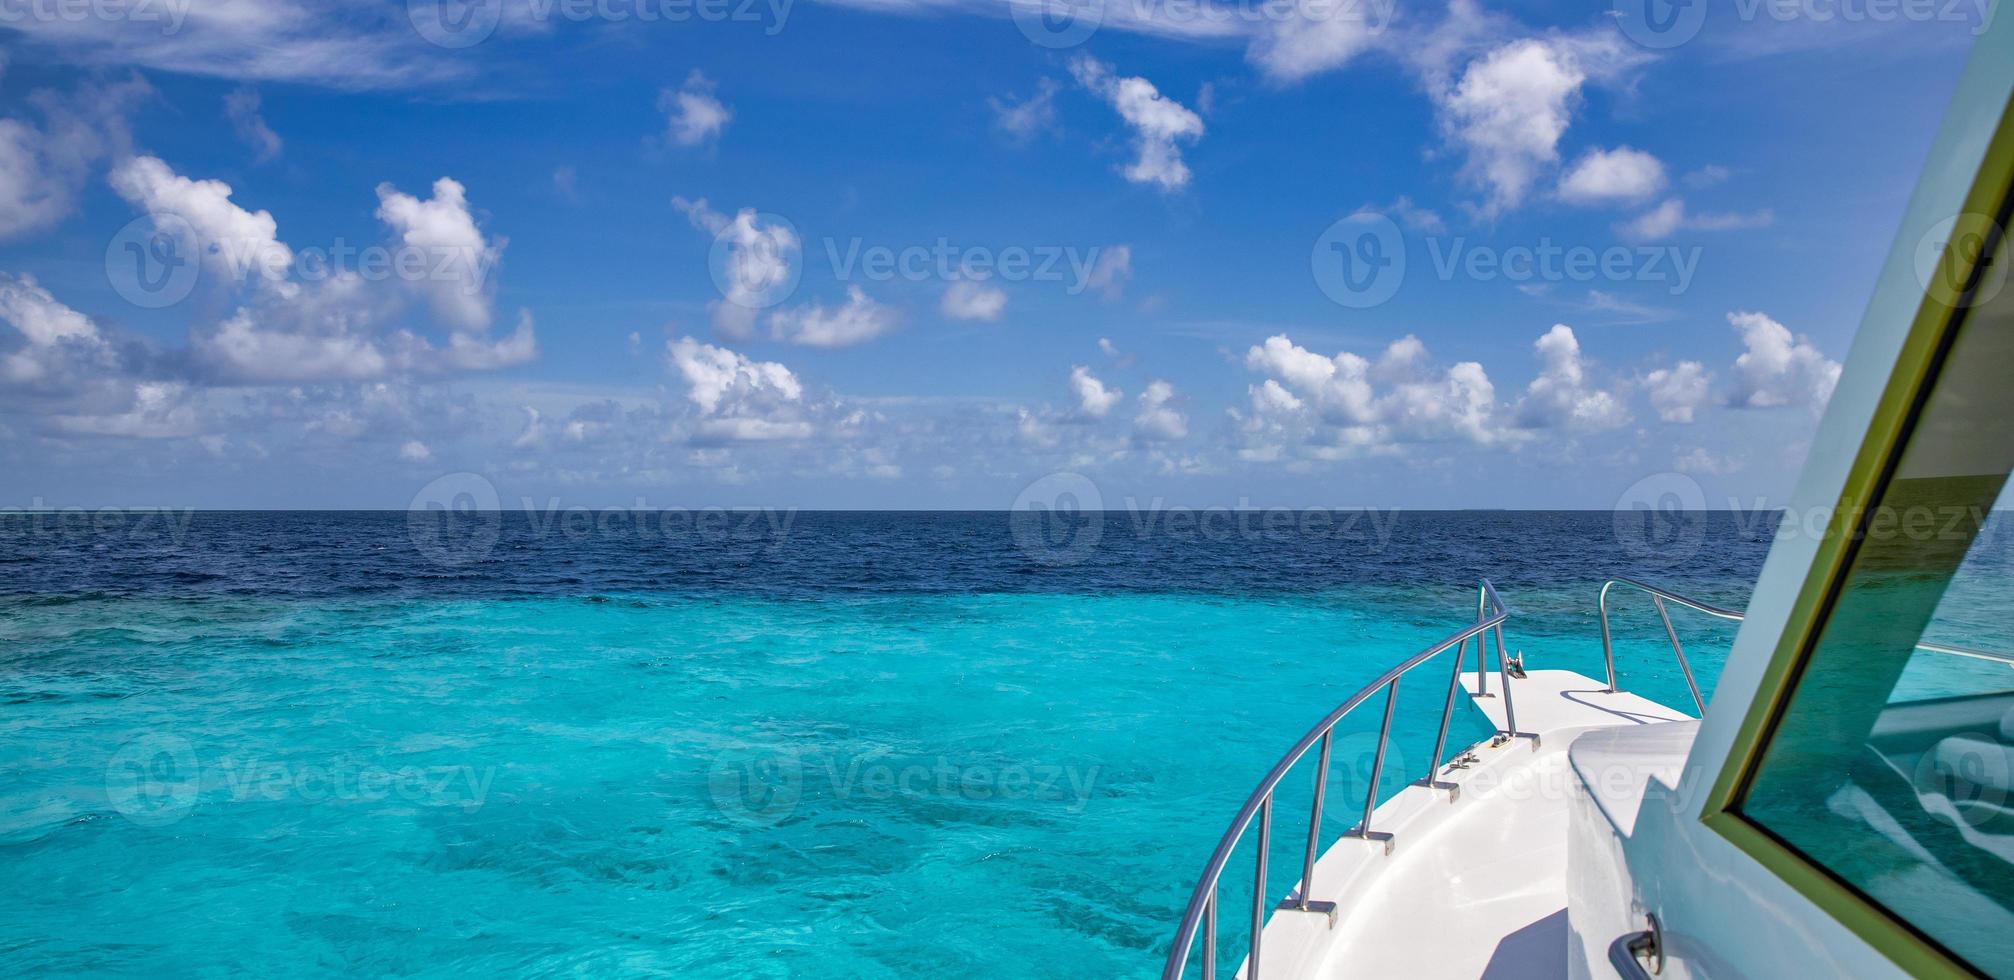 vue imprenable depuis le bateau sur le lagon d'eau de mer claire. voyage de luxe, vue sur le paysage marin méditerranéen bleu turquoise tropical depuis le yacht de voilier blanc de luxe. belle croisière de loisirs de vacances d'été exotiques photo